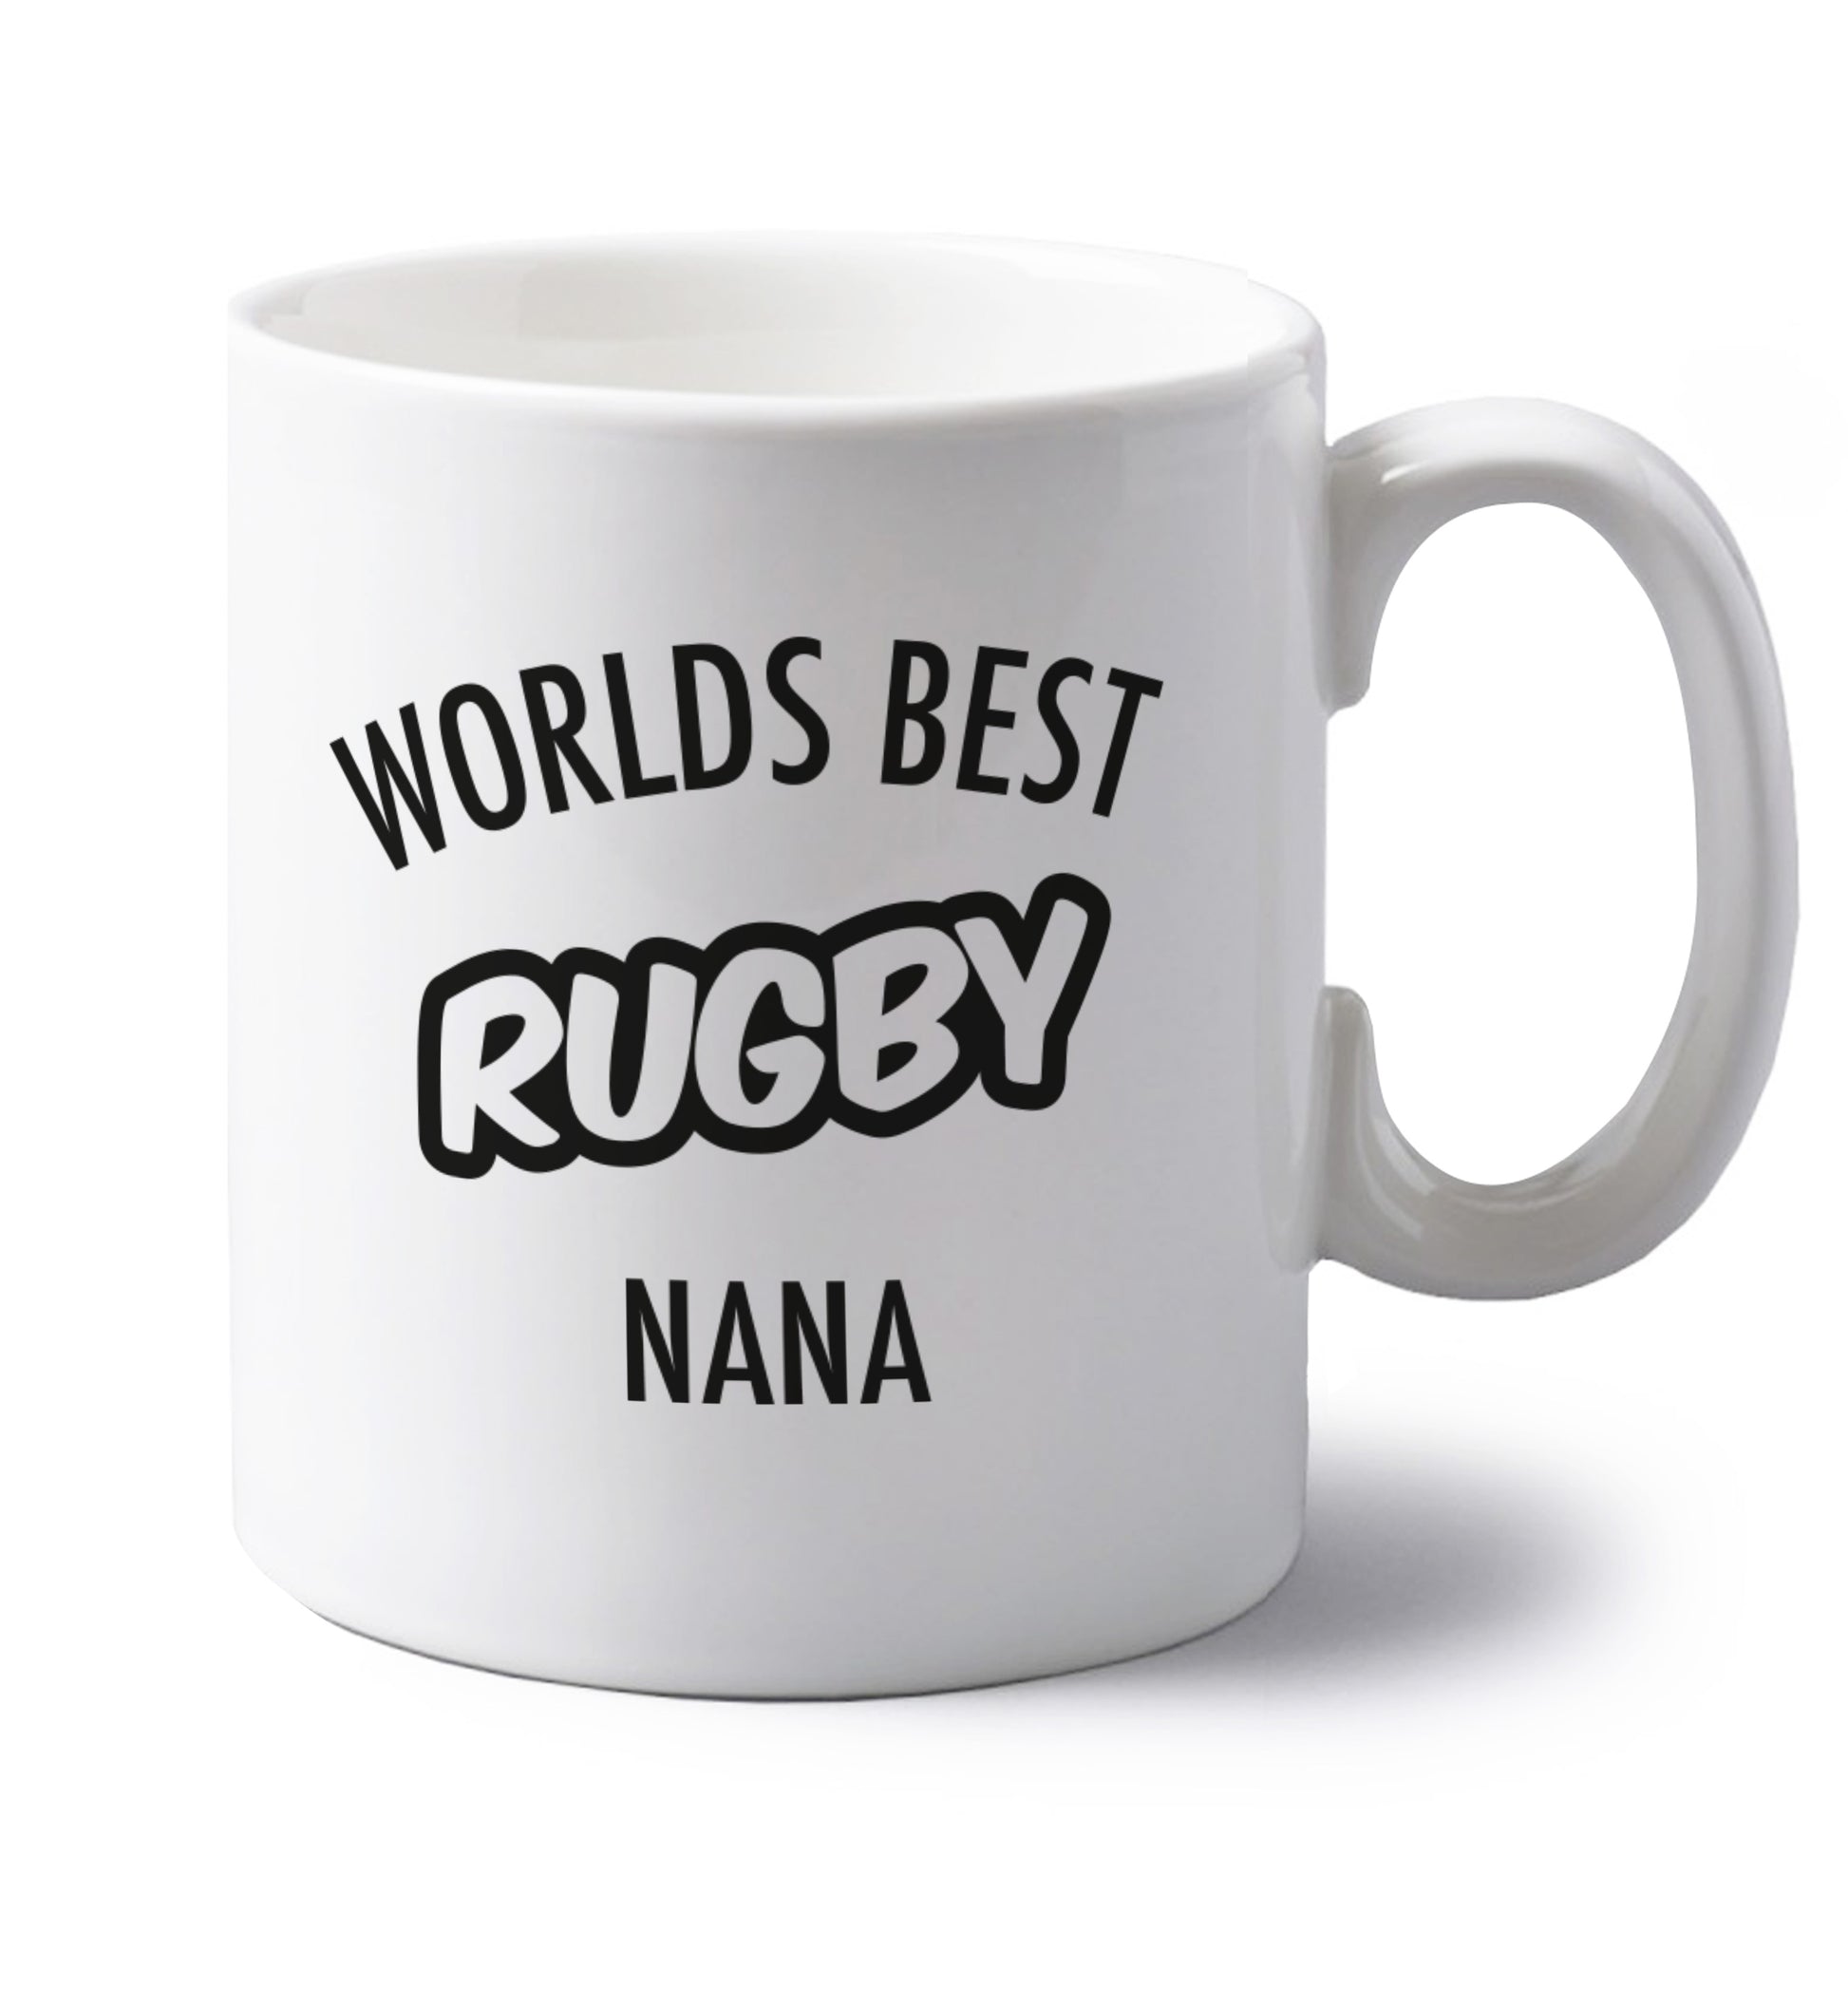 Worlds Best Rugby Grandma left handed white ceramic mug 